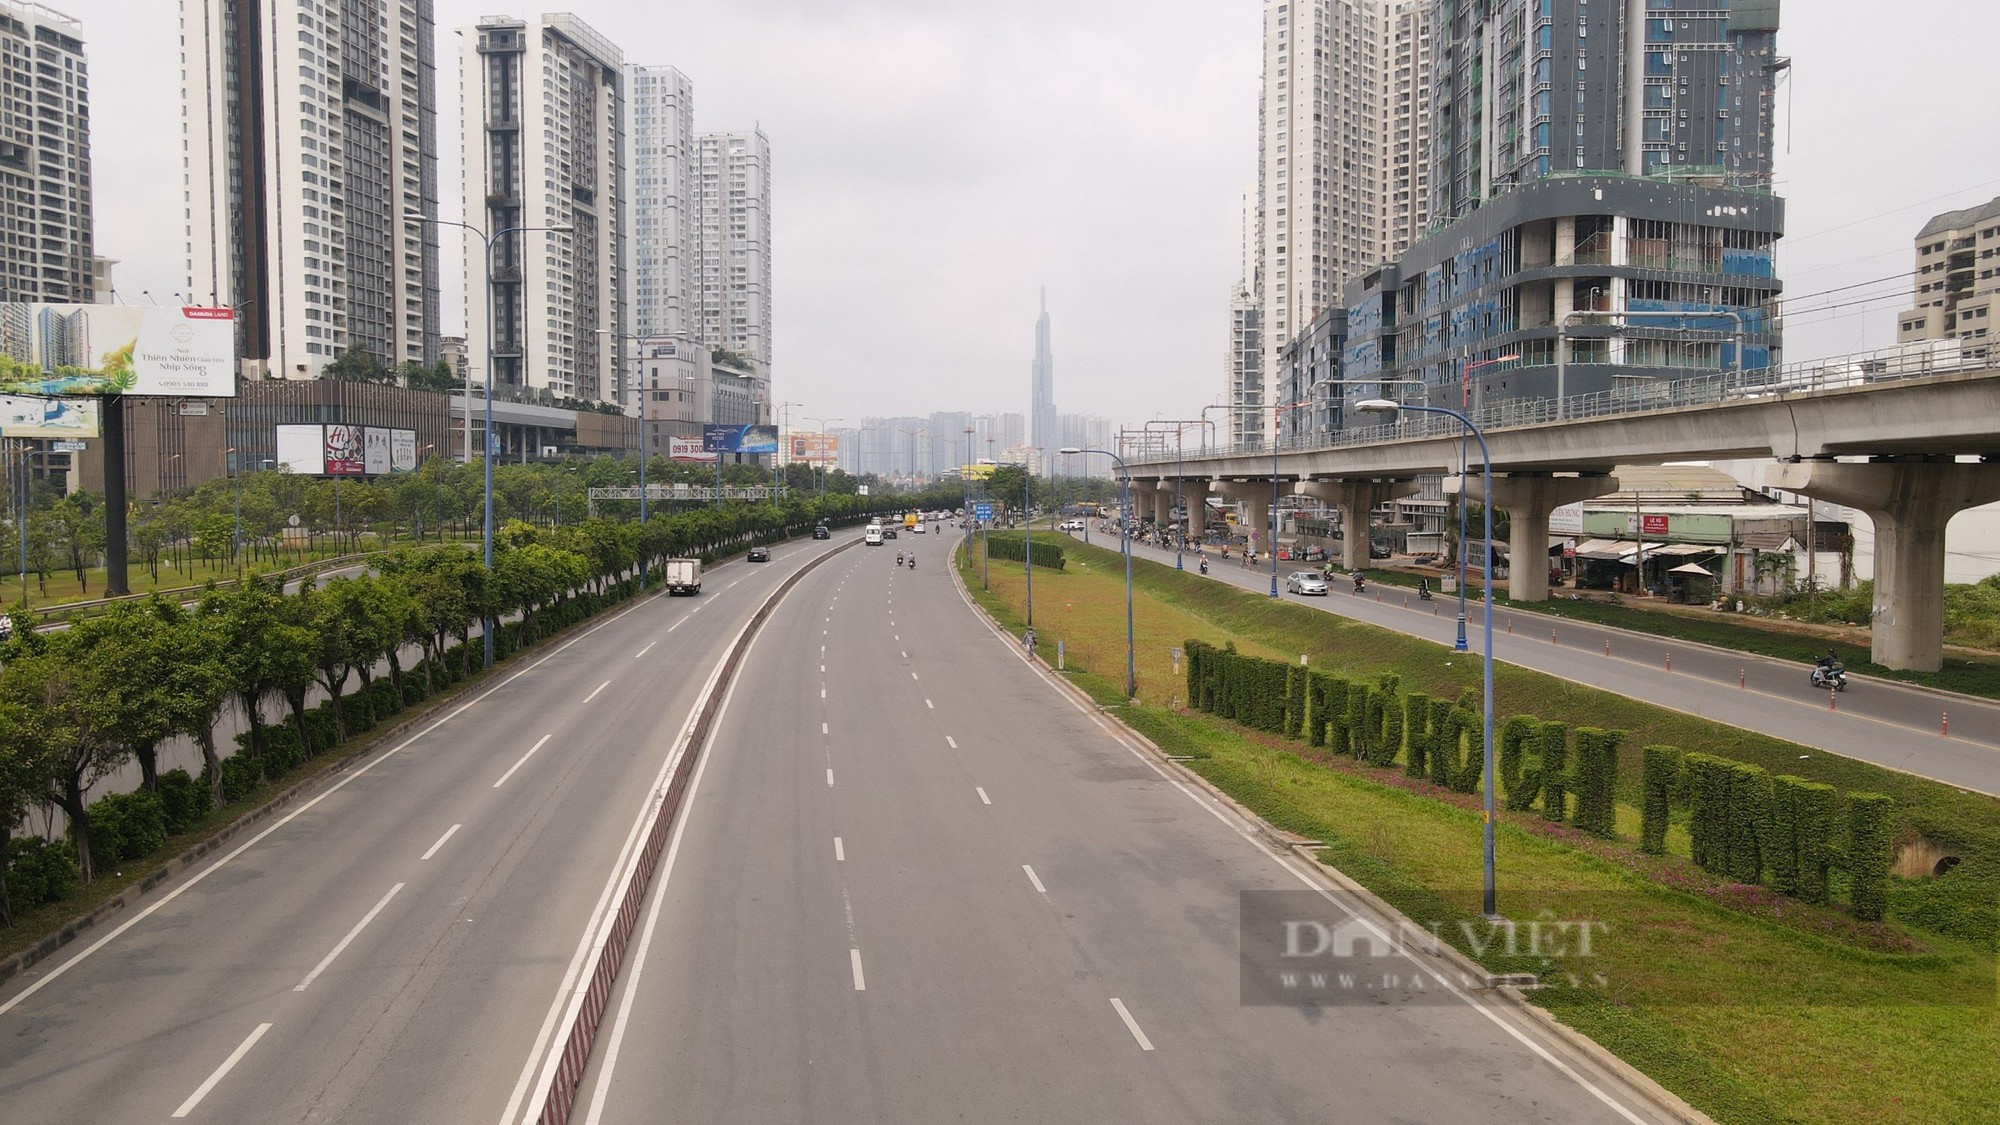 Nhà cao tầng san sát trên 8km Xa lộ Hà Nội mà TP.HCM muốn đặt tên đường Võ Nguyên Giáp - Ảnh 2.